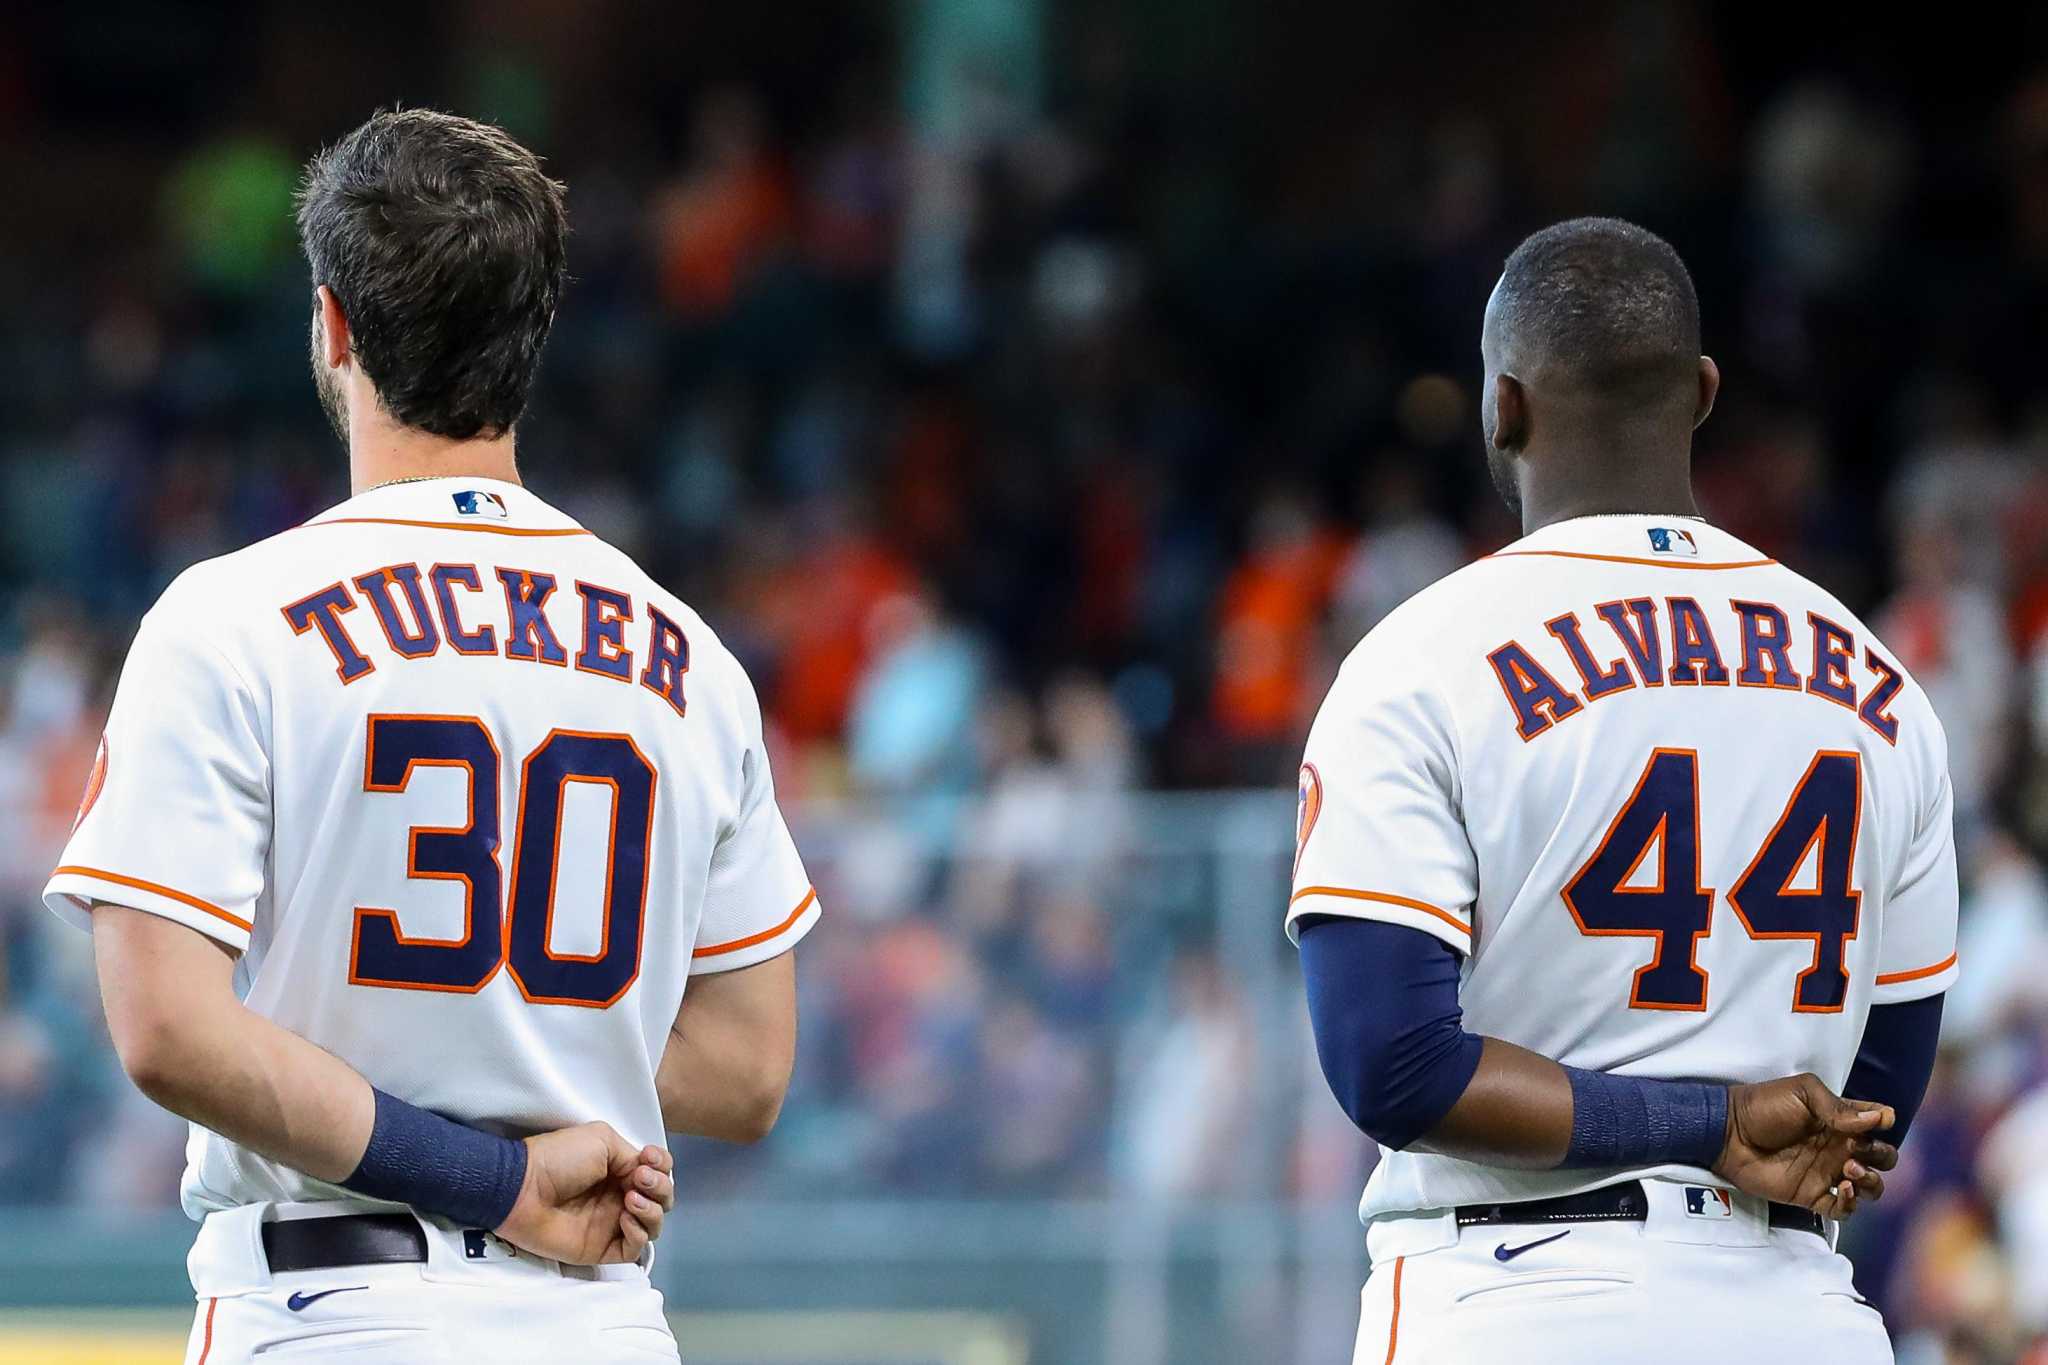 Kyle Tucker, Yordan Alvarez seize 2022 spotlight for Astros